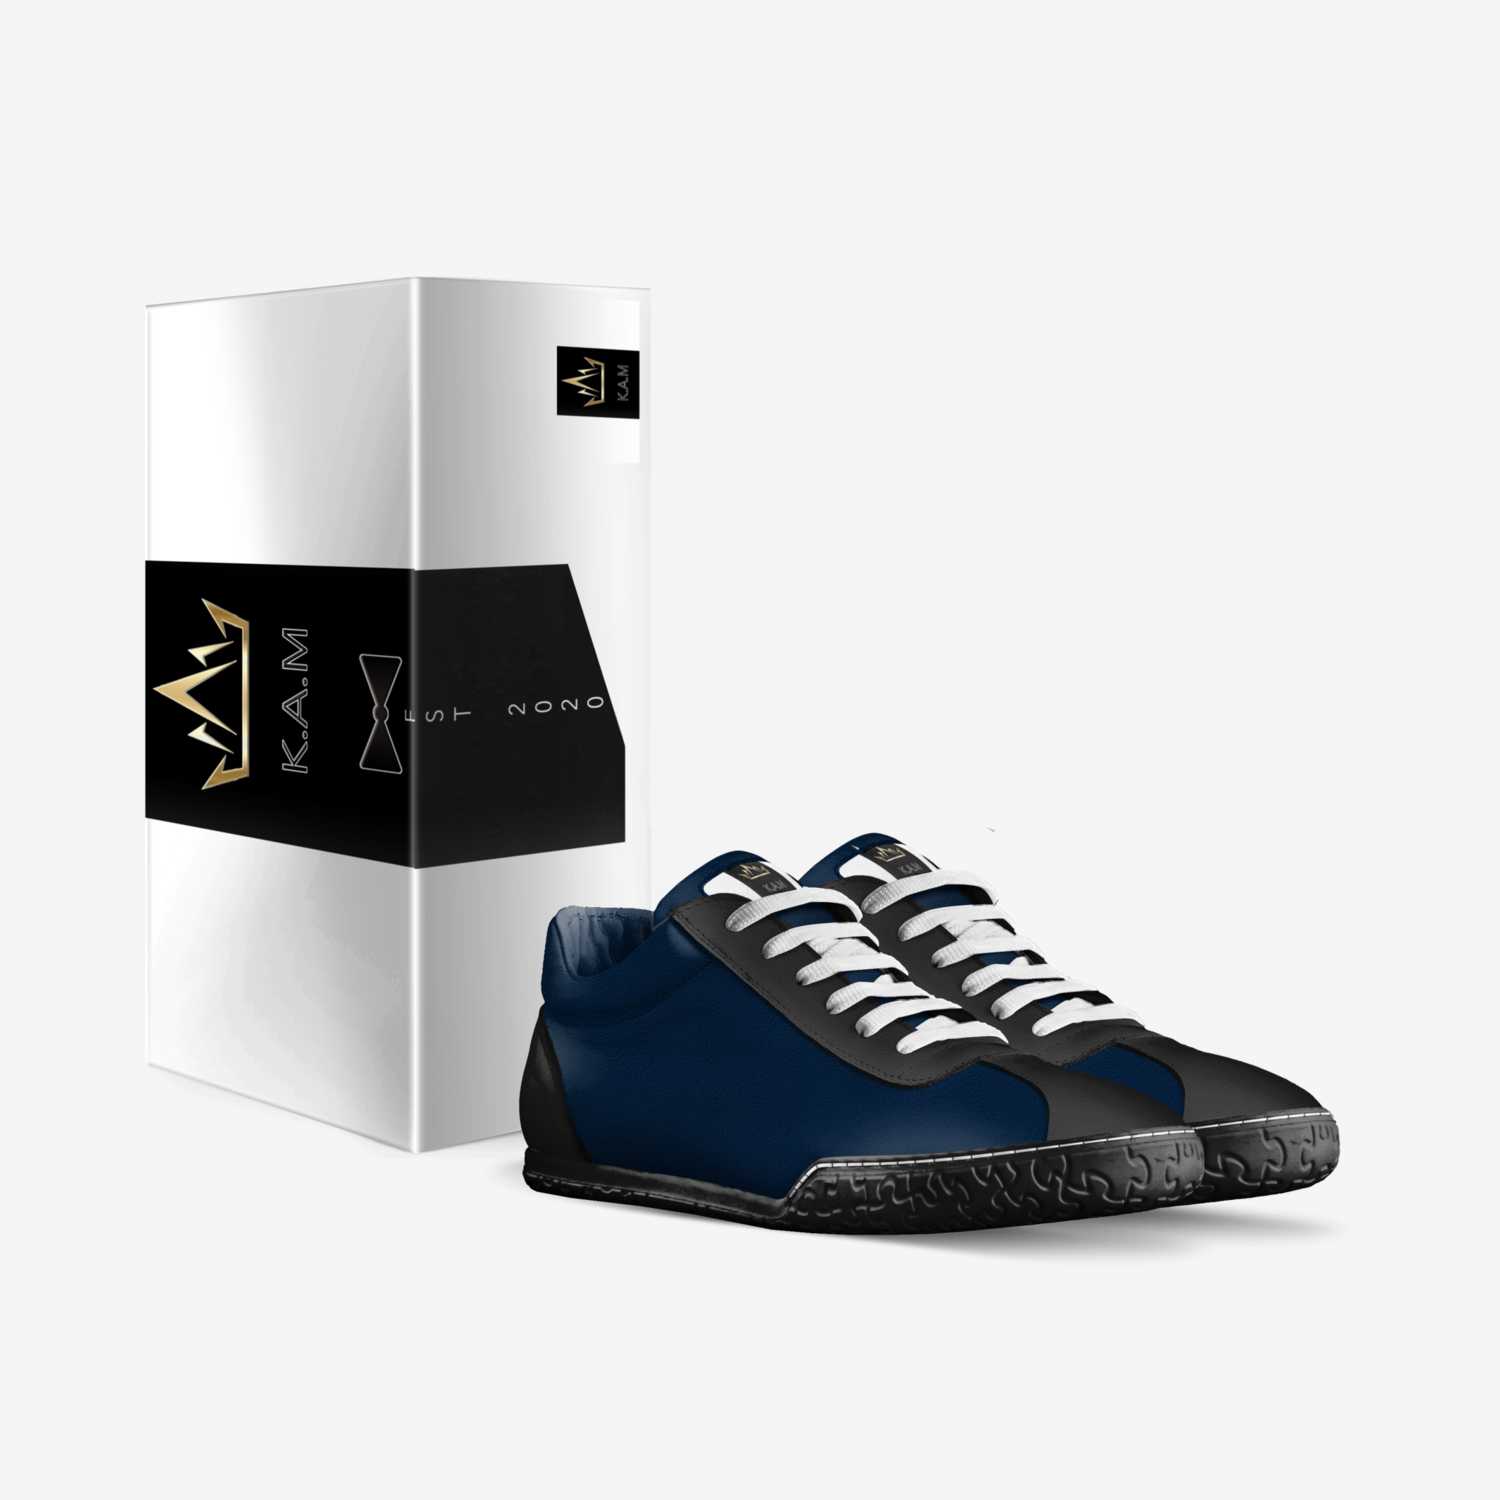 E.D.H 2.0 custom made in Italy shoes by K.a.m 2020 | Box view